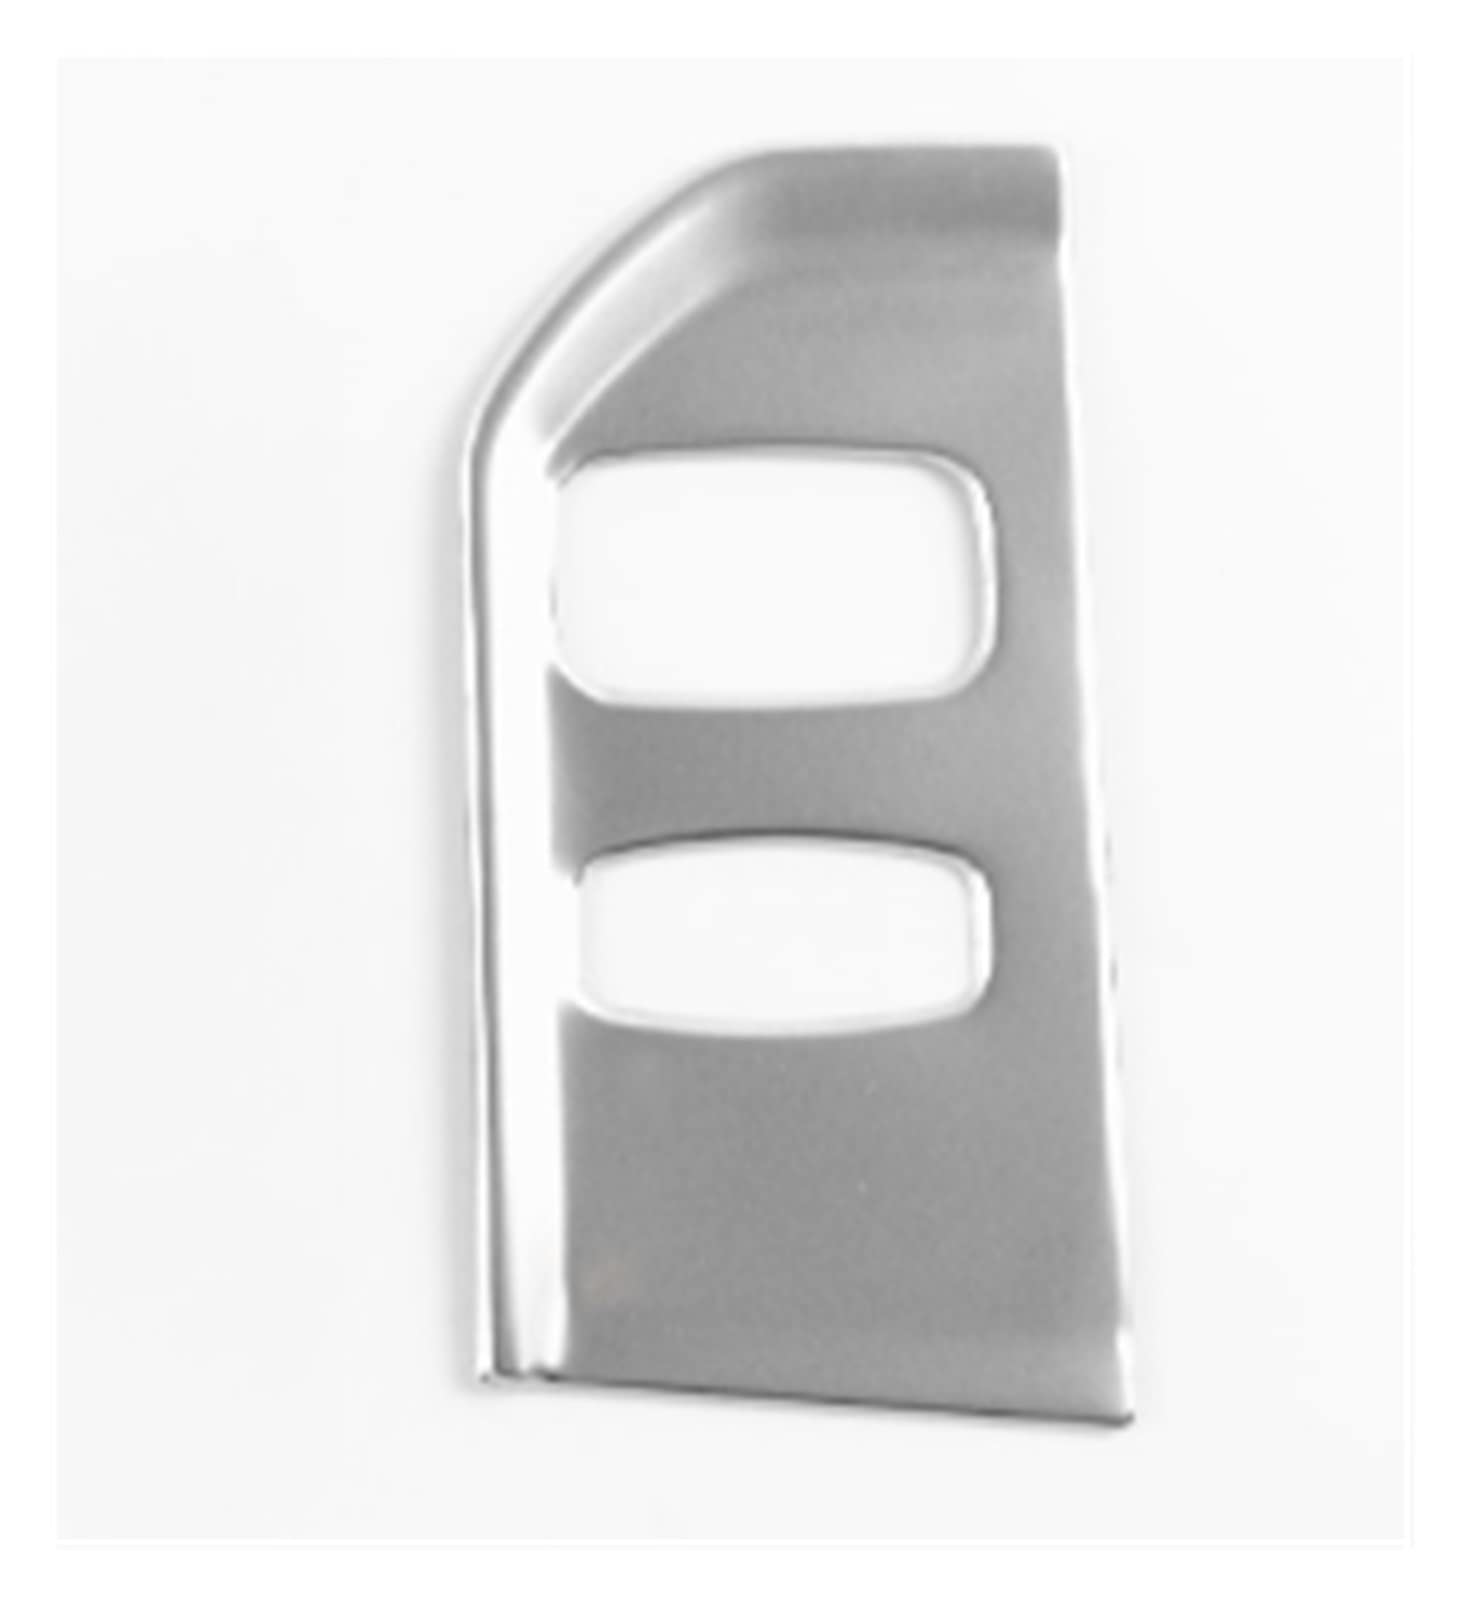 AANAN Edelstahl Auto Styling Konsole Schlüsselloch Panel Rahmen Abdeckung Trim Kompatibel Mit XC60 2013-2017 LHD Innen Zubehör Aufkleber(Silver) von AANAN